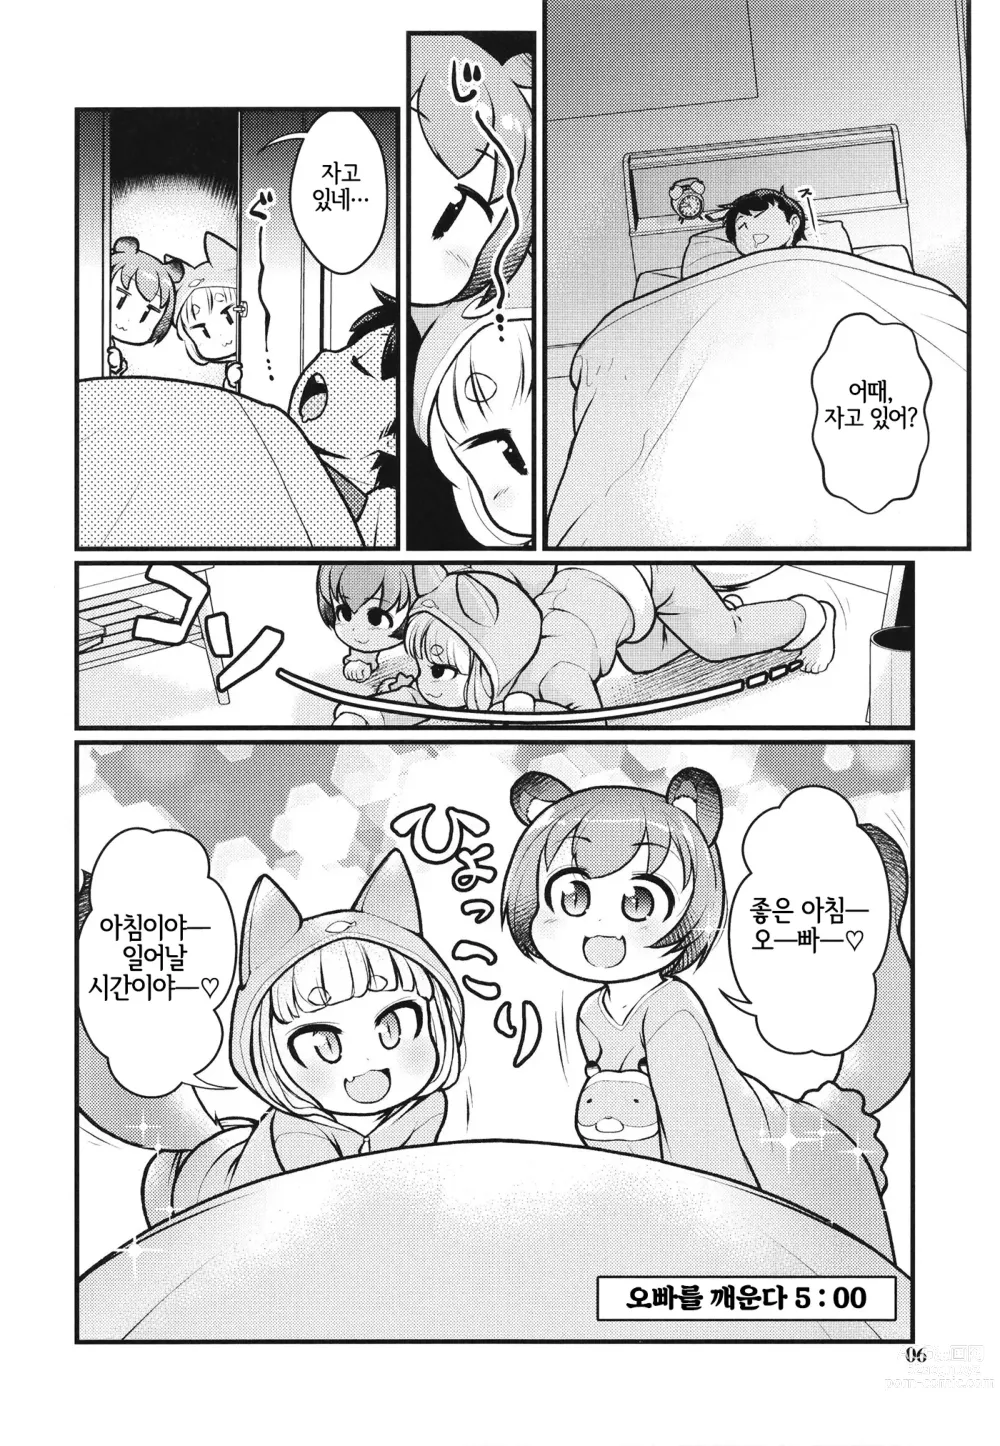 Page 5 of doujinshi 케모미미 아침 일상 2